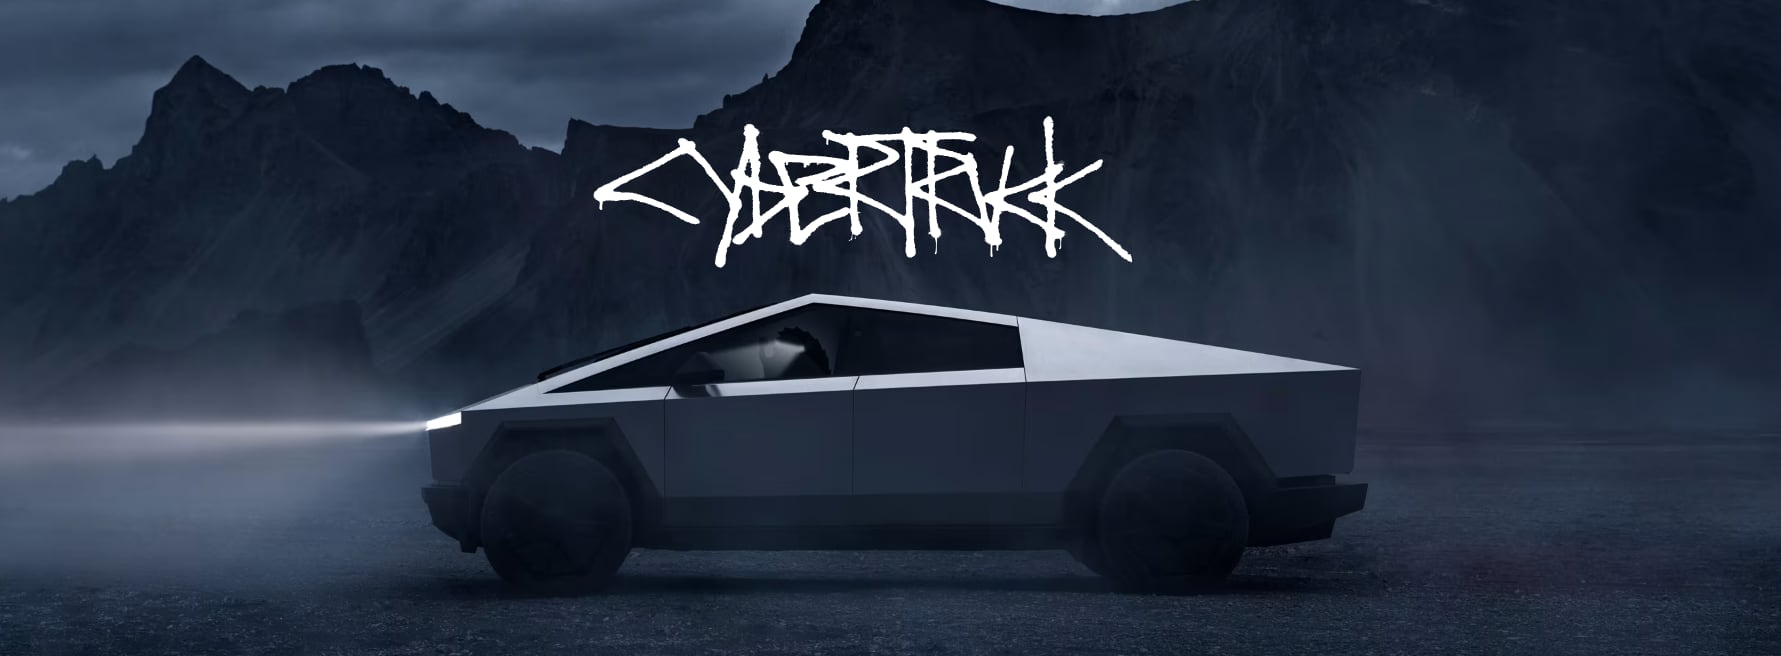 El nuevo auto tiene una estética inspirada en el estilo cyberpunk. (Tesla)